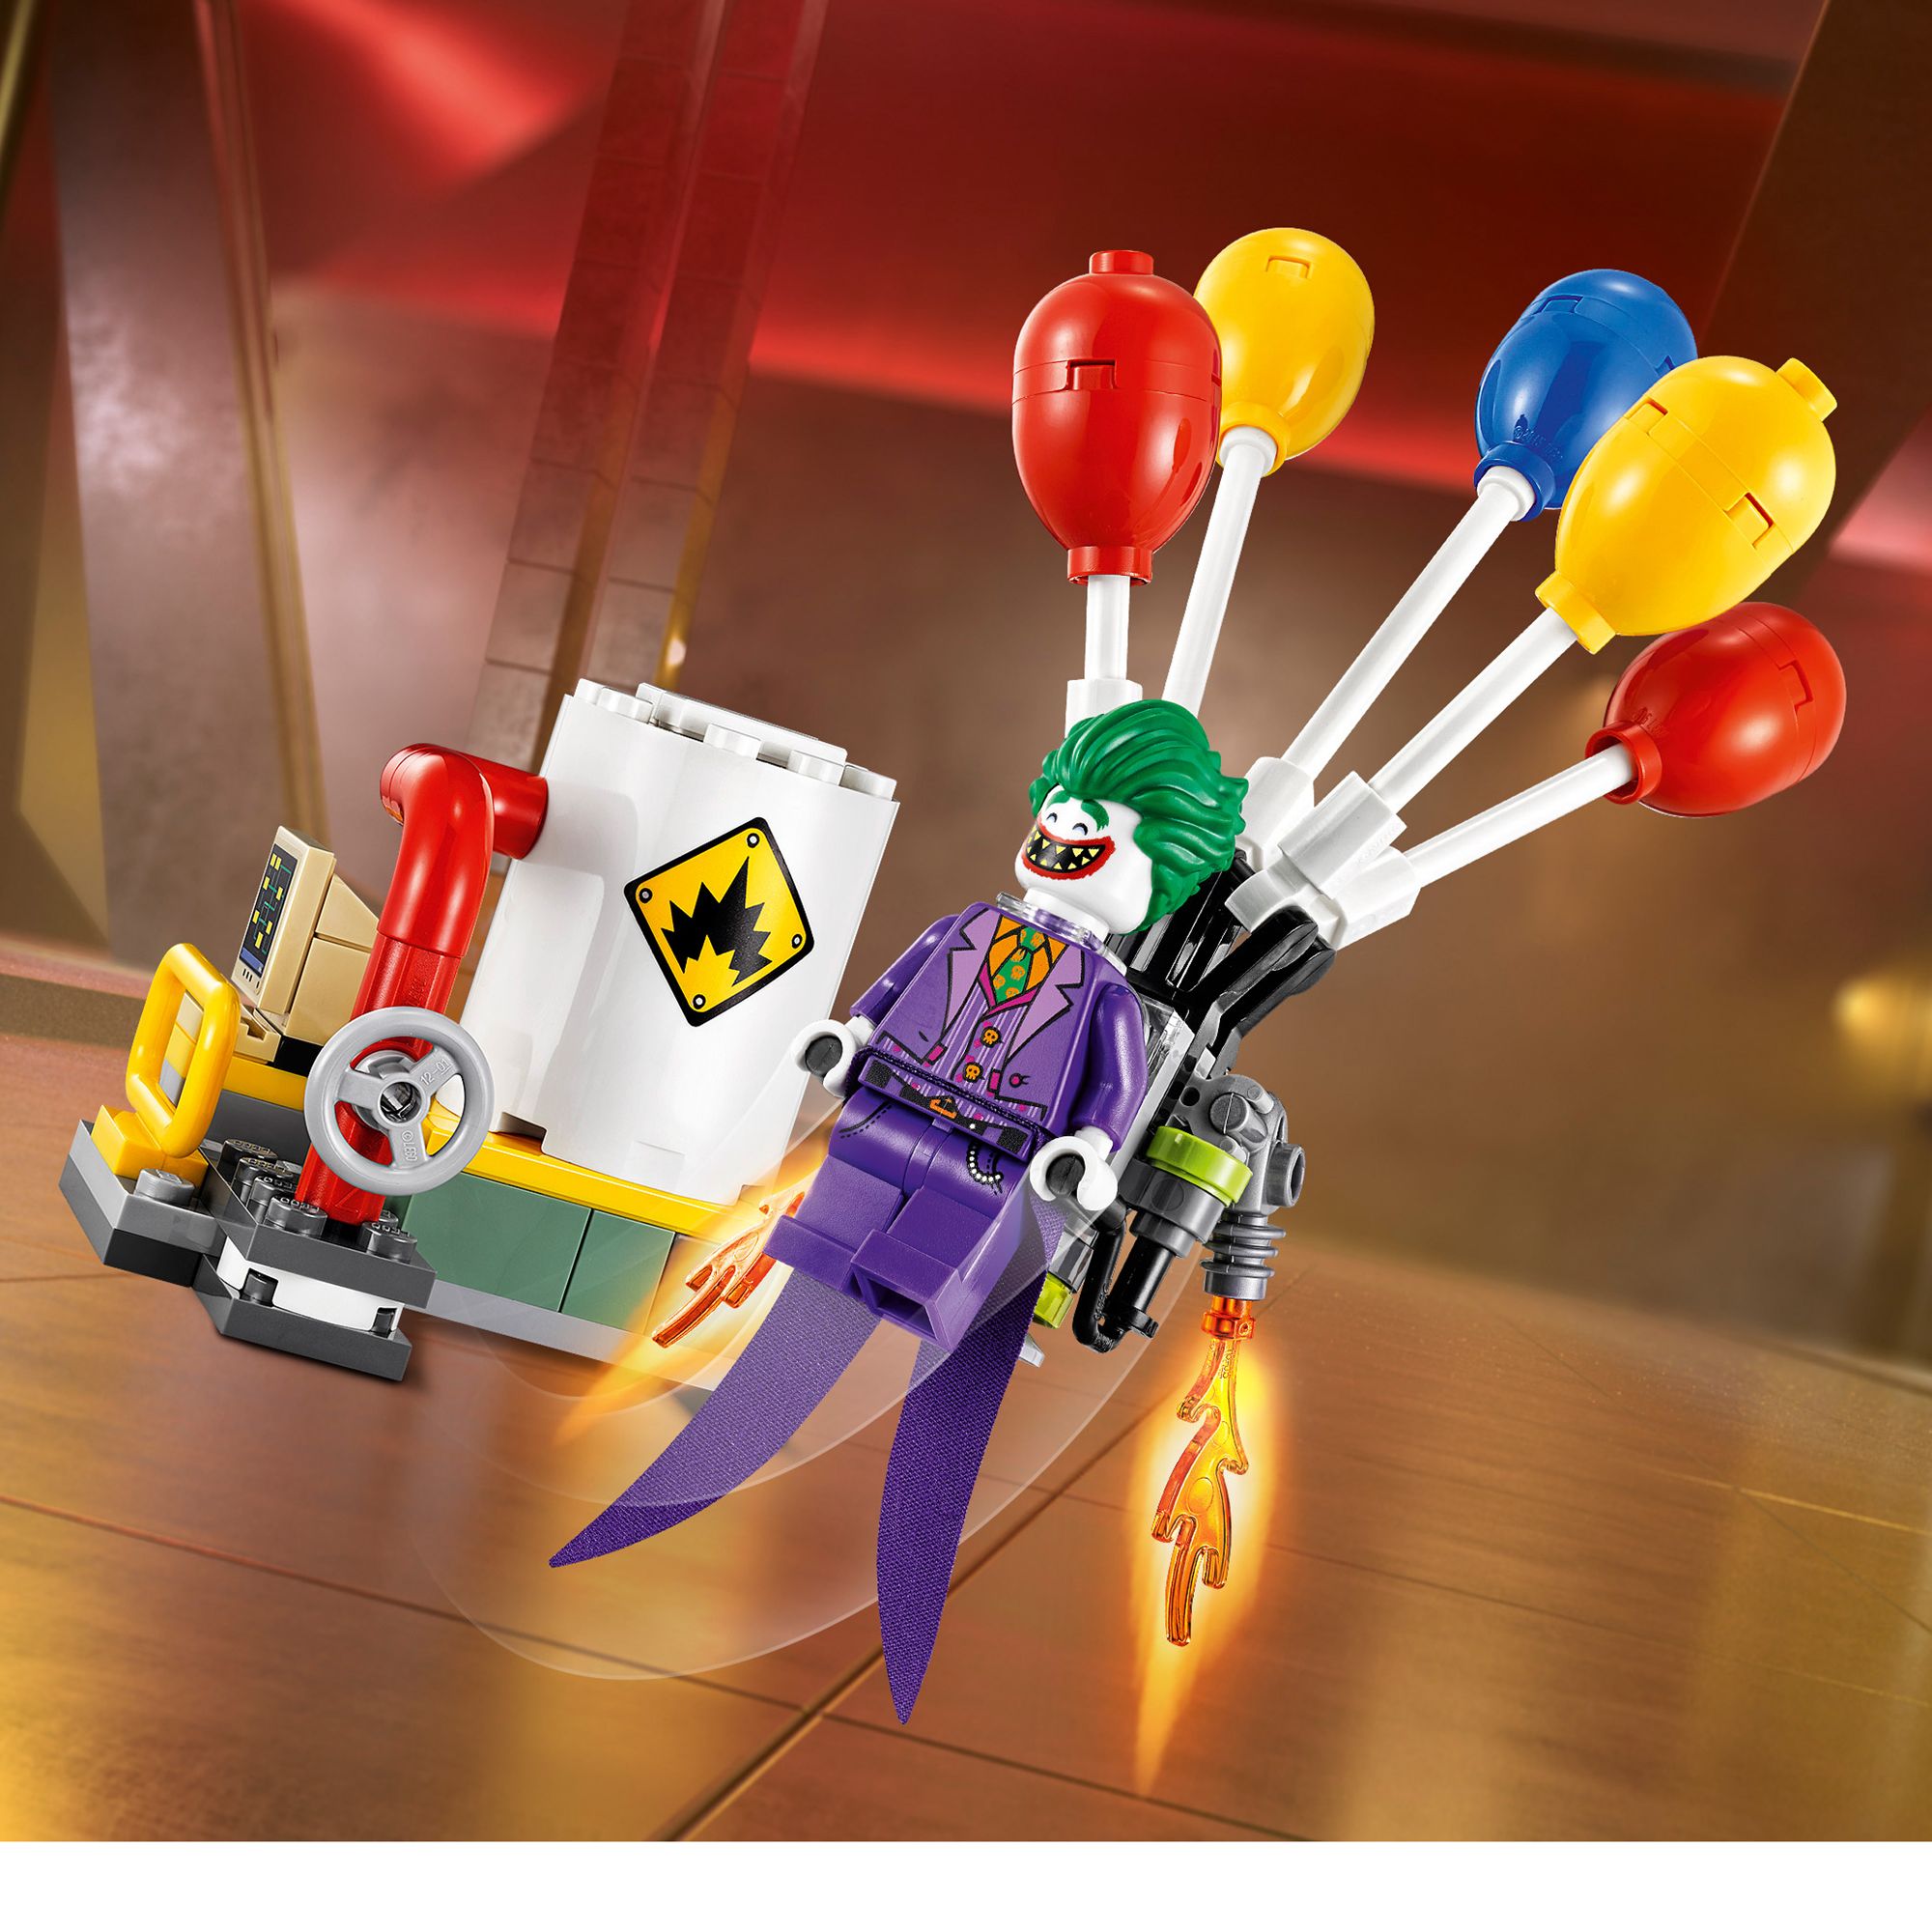 lego batman the joker balloon escape